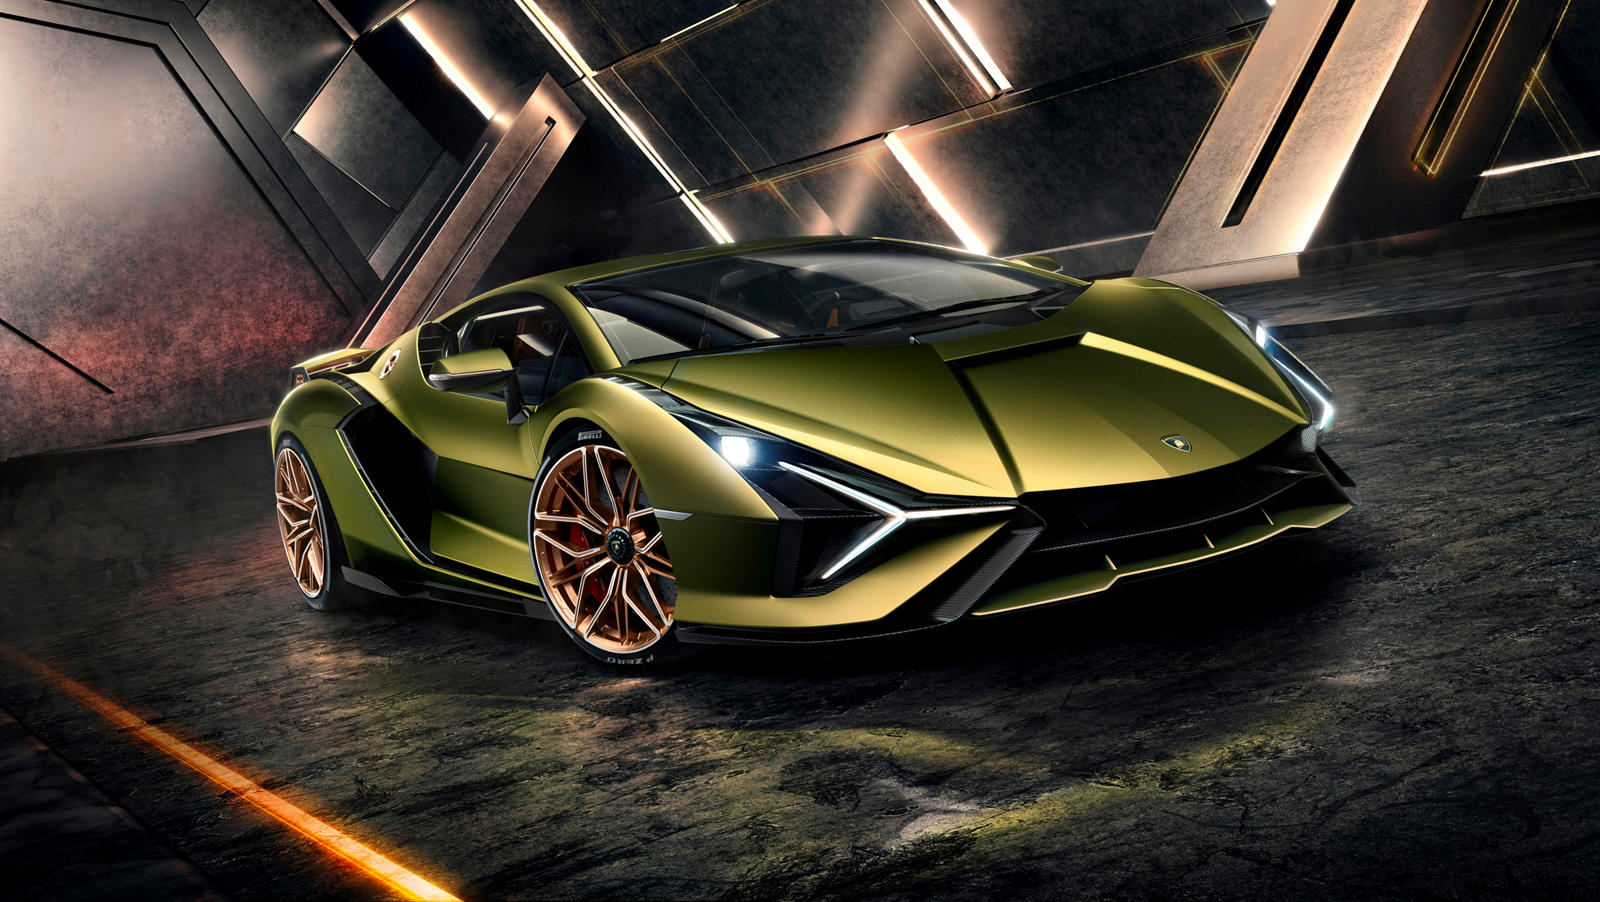 Lamborghini Sian: Review, Trims, Specs, Price, New Interior Features, Exterior Design, and 